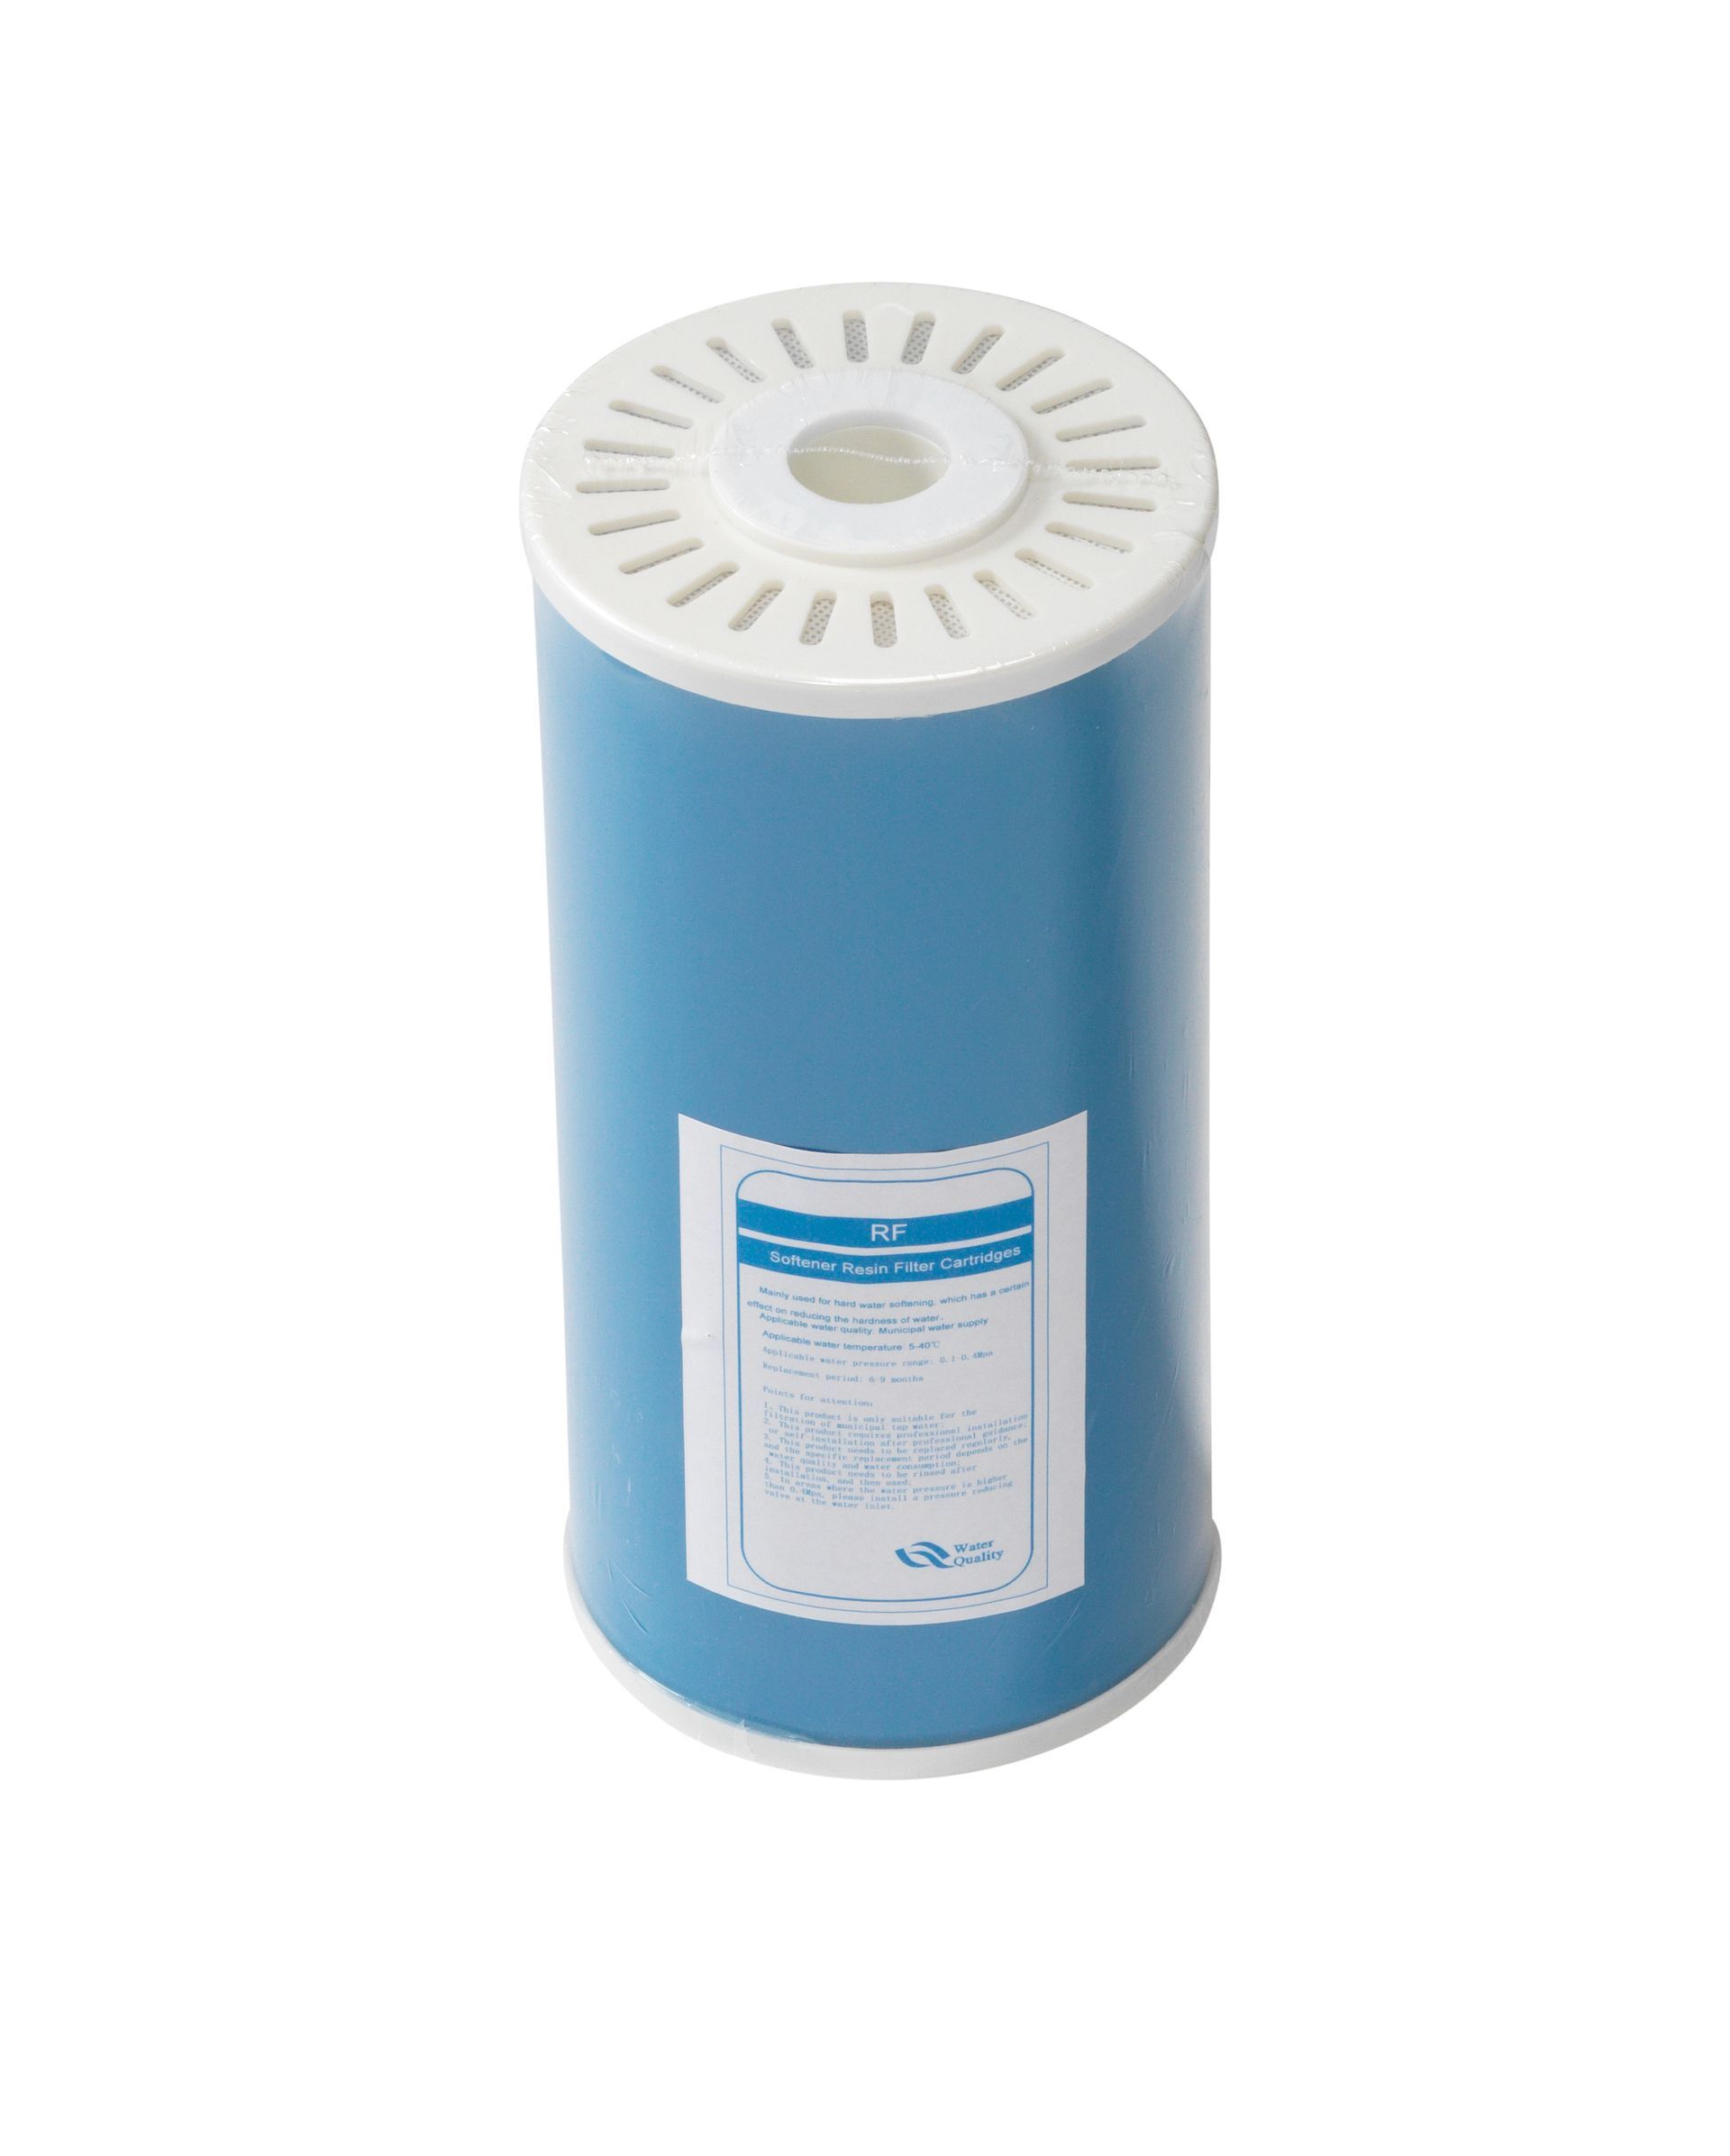 RF-filter voor water zuiveren en ontharden, schoner water!